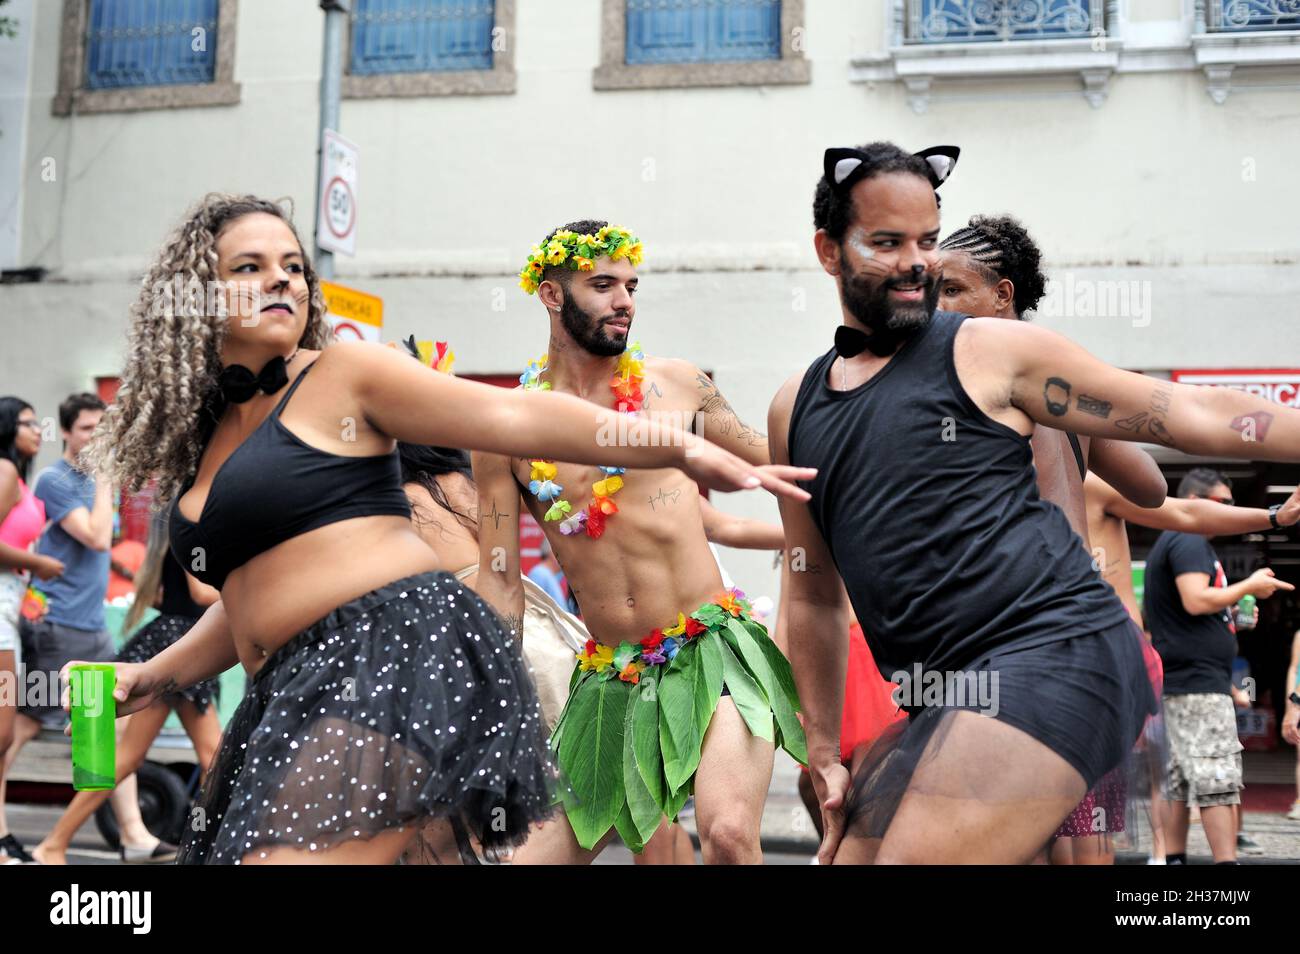 Brasile – 22 febbraio 2020: I festaioli in costume si divertono nel Carnevale ballando e divertendosi durante una sfilata di strada che si tiene nel centro di Rio de Janeiro Foto Stock